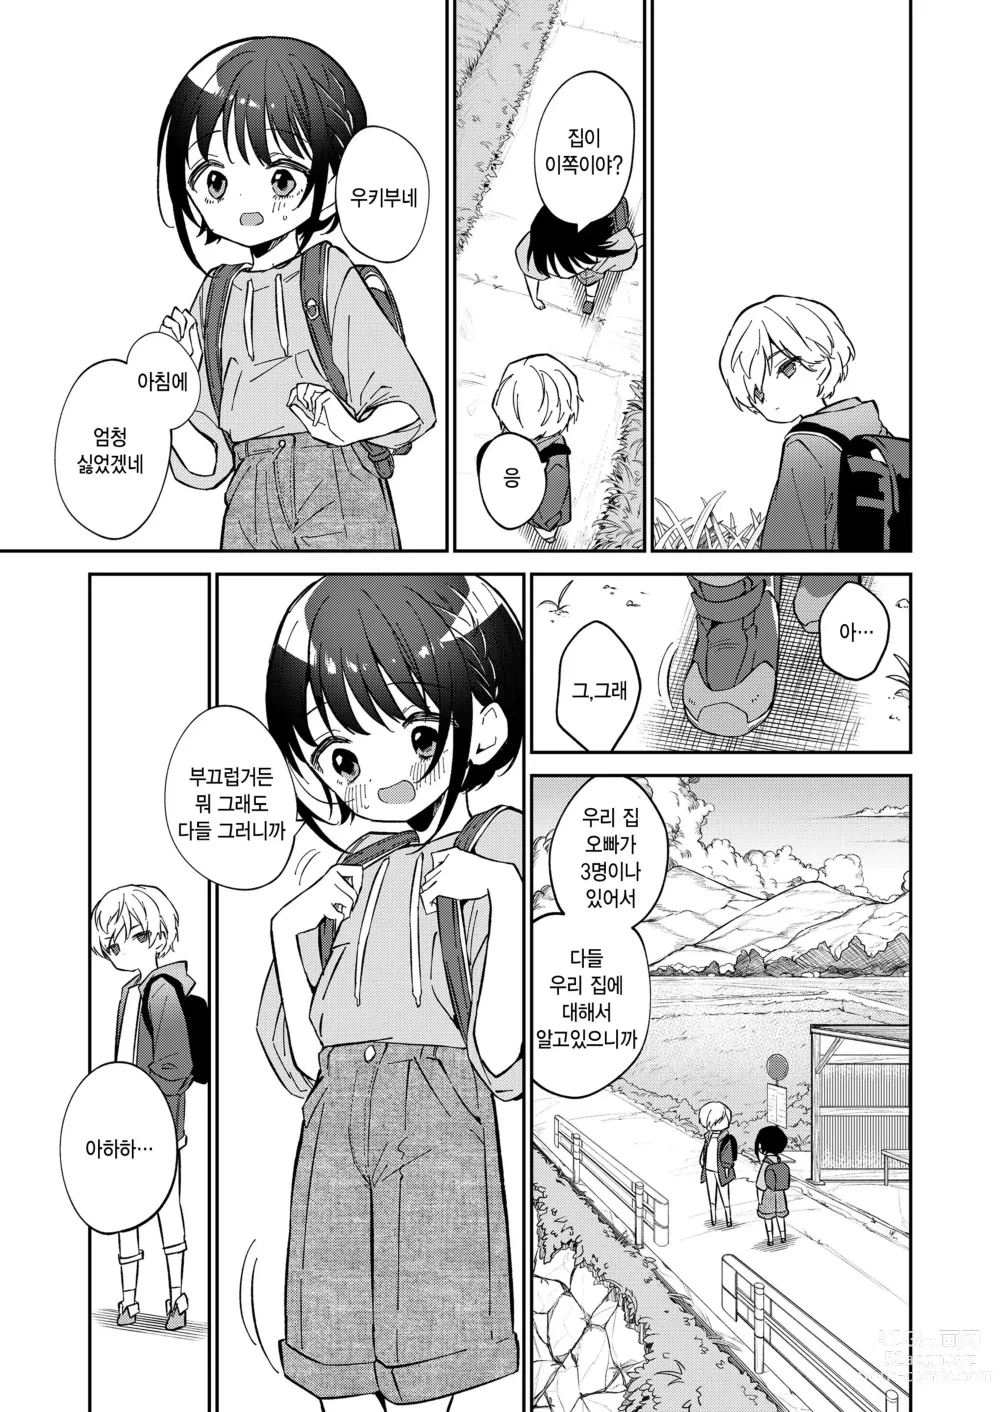 Page 7 of manga Watashi ga iki wo shiteru basho